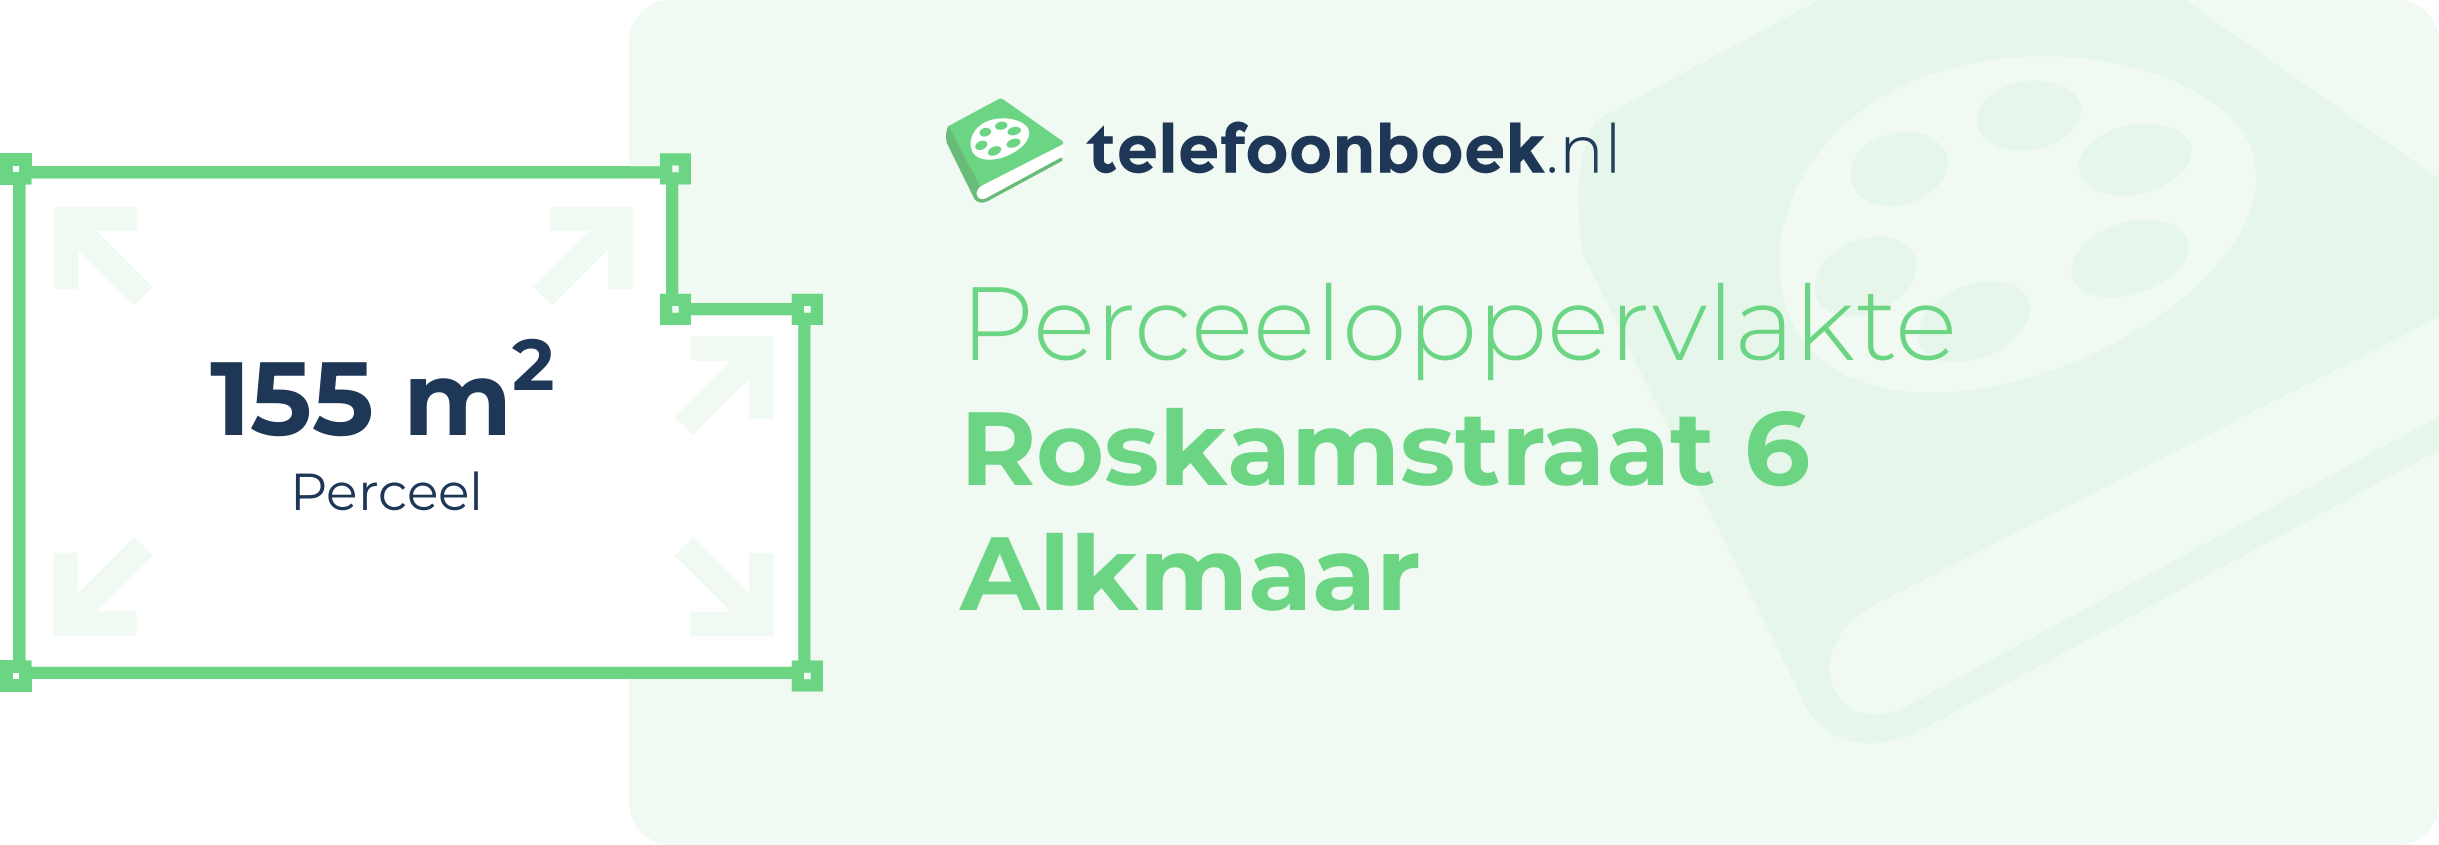 Perceeloppervlakte Roskamstraat 6 Alkmaar